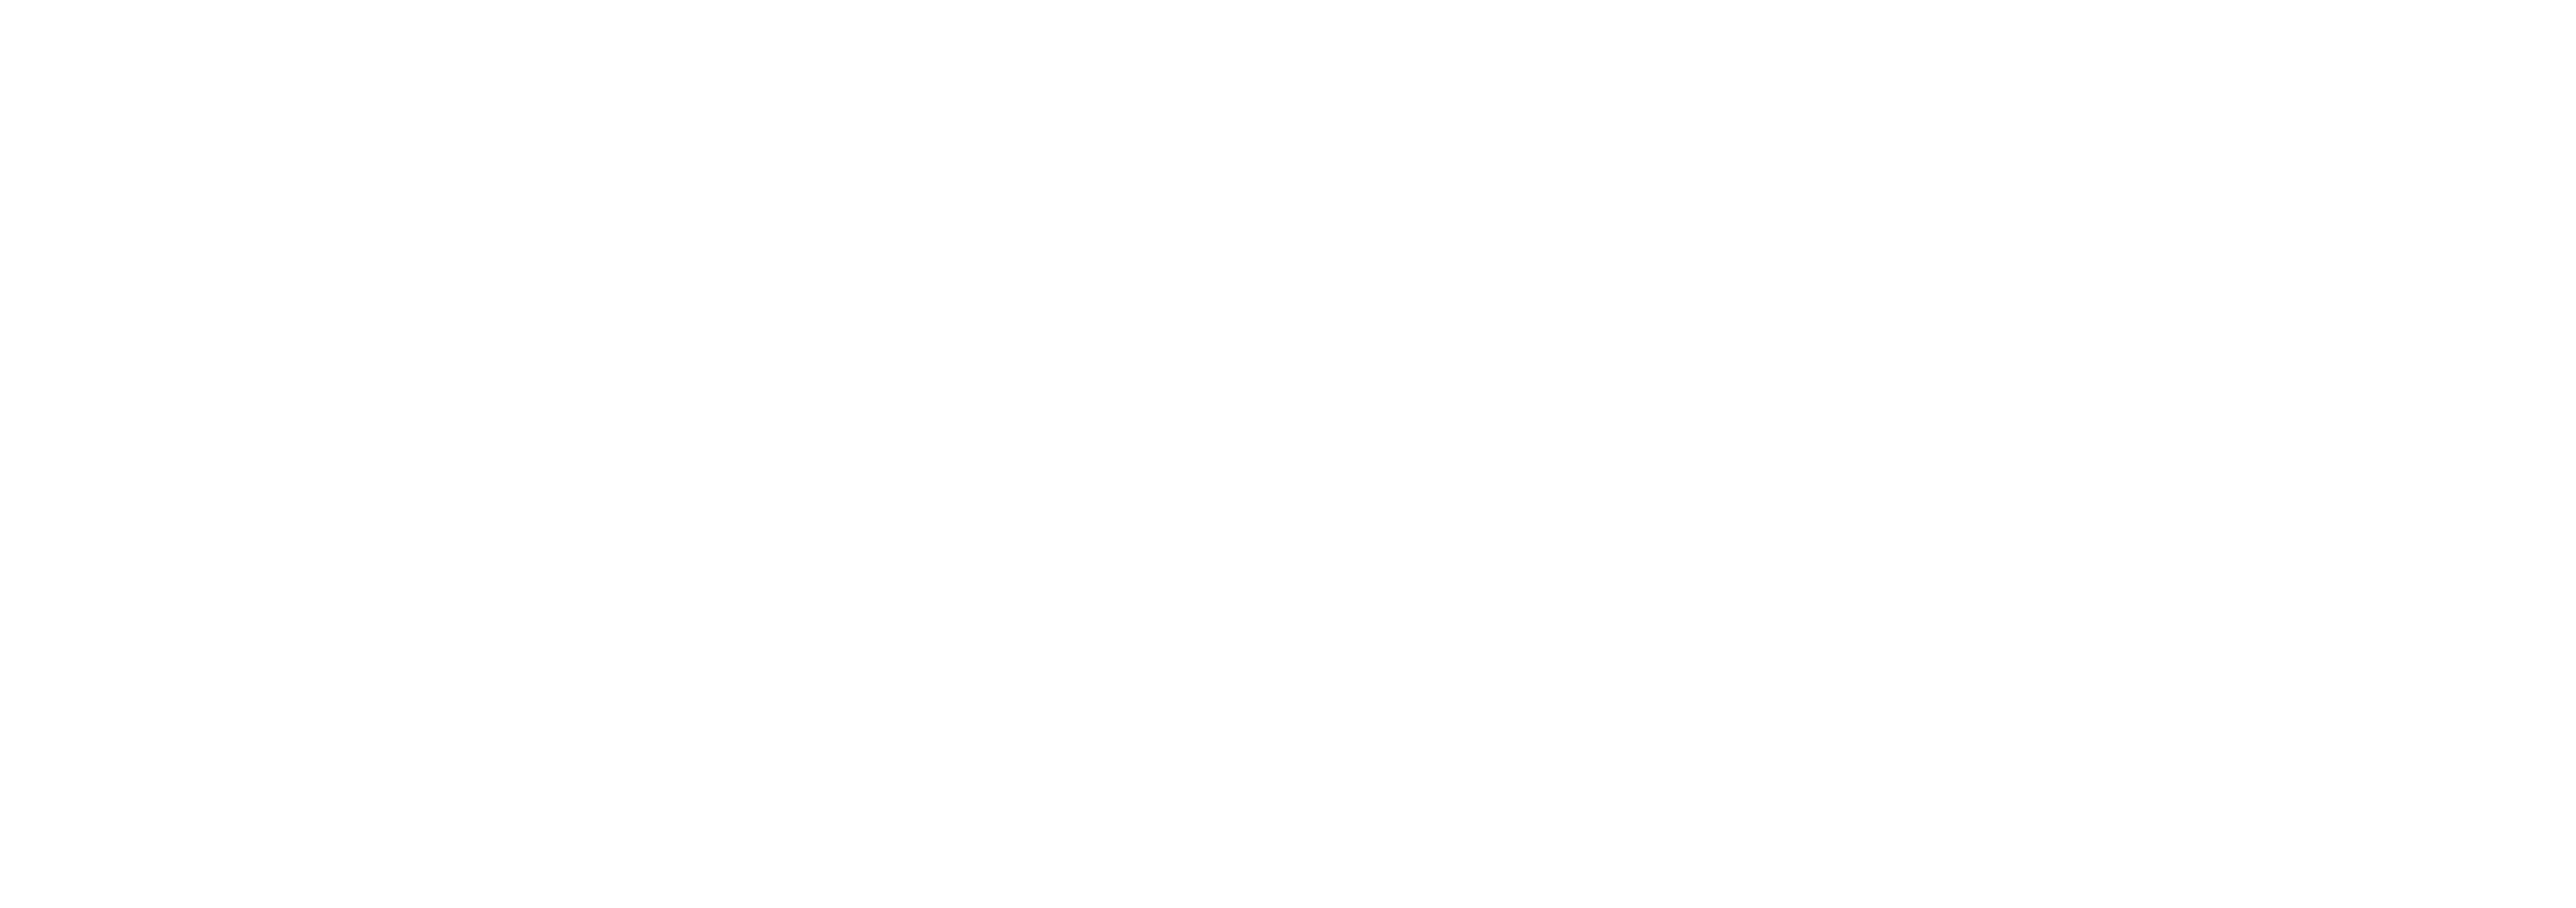 easy-impf-logo-white